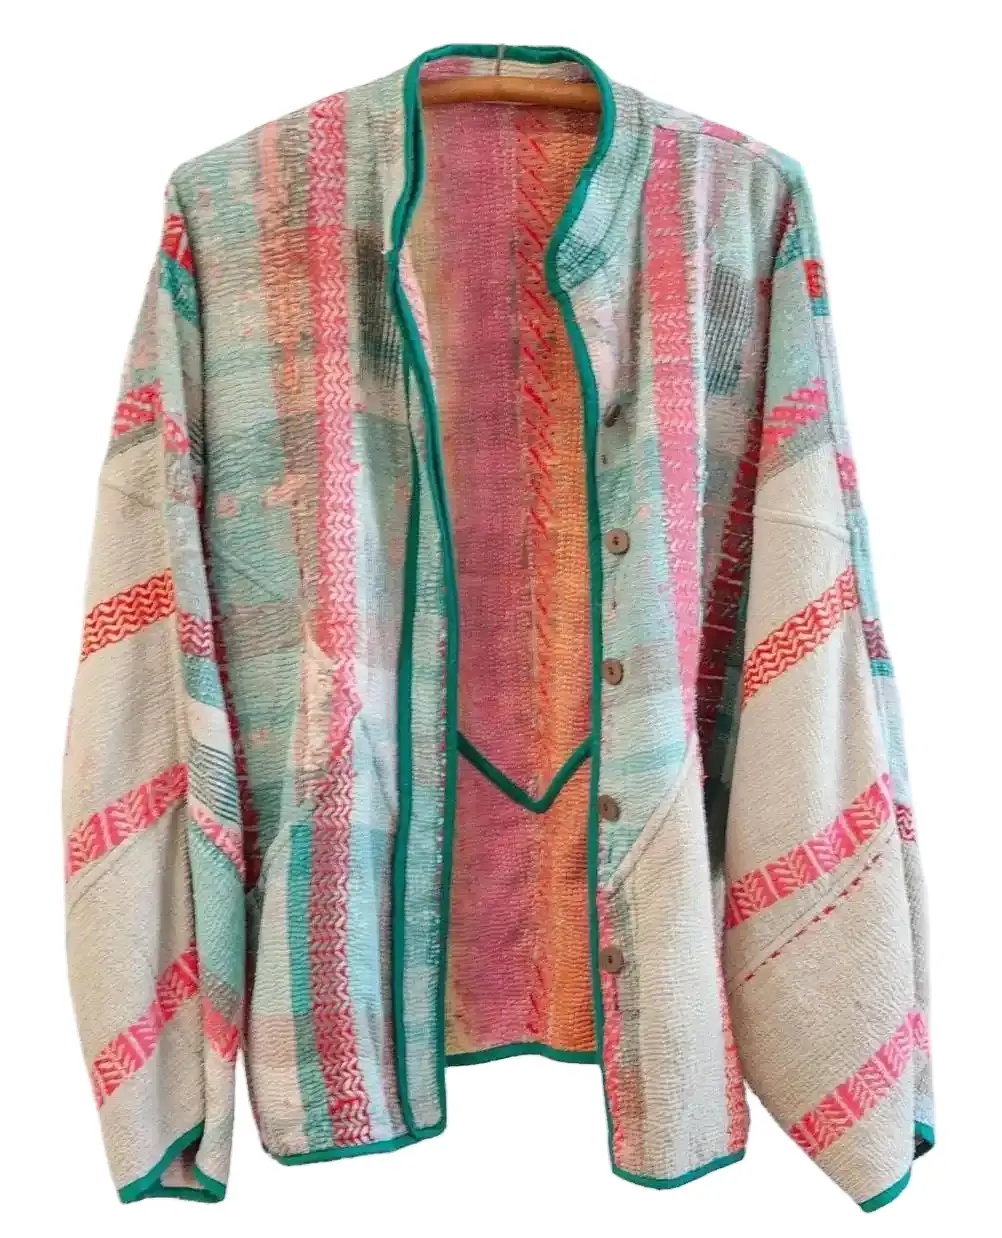 सर्वोत्तम गुणवत्ता वाली सुंदर कढ़ाई वाली विंटेज कांथा जैकेट नवीनतम महिला शॉर्ट जैकेट संग्रह रंग डिजाइनर कपड़े